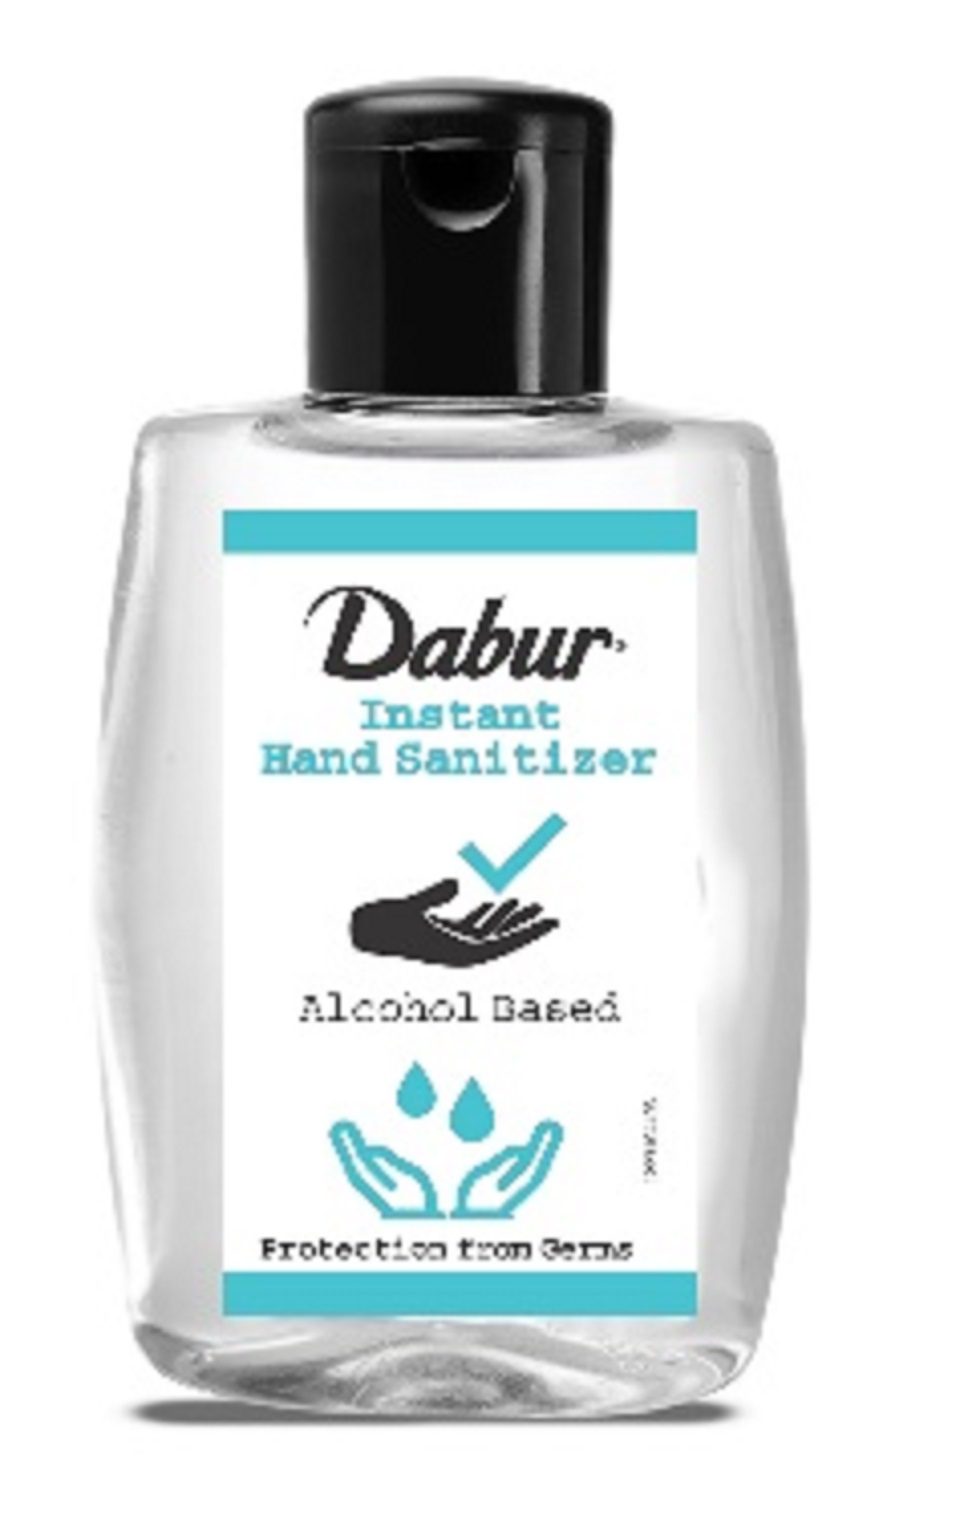 Dabur Nepal launches hand sanitizer